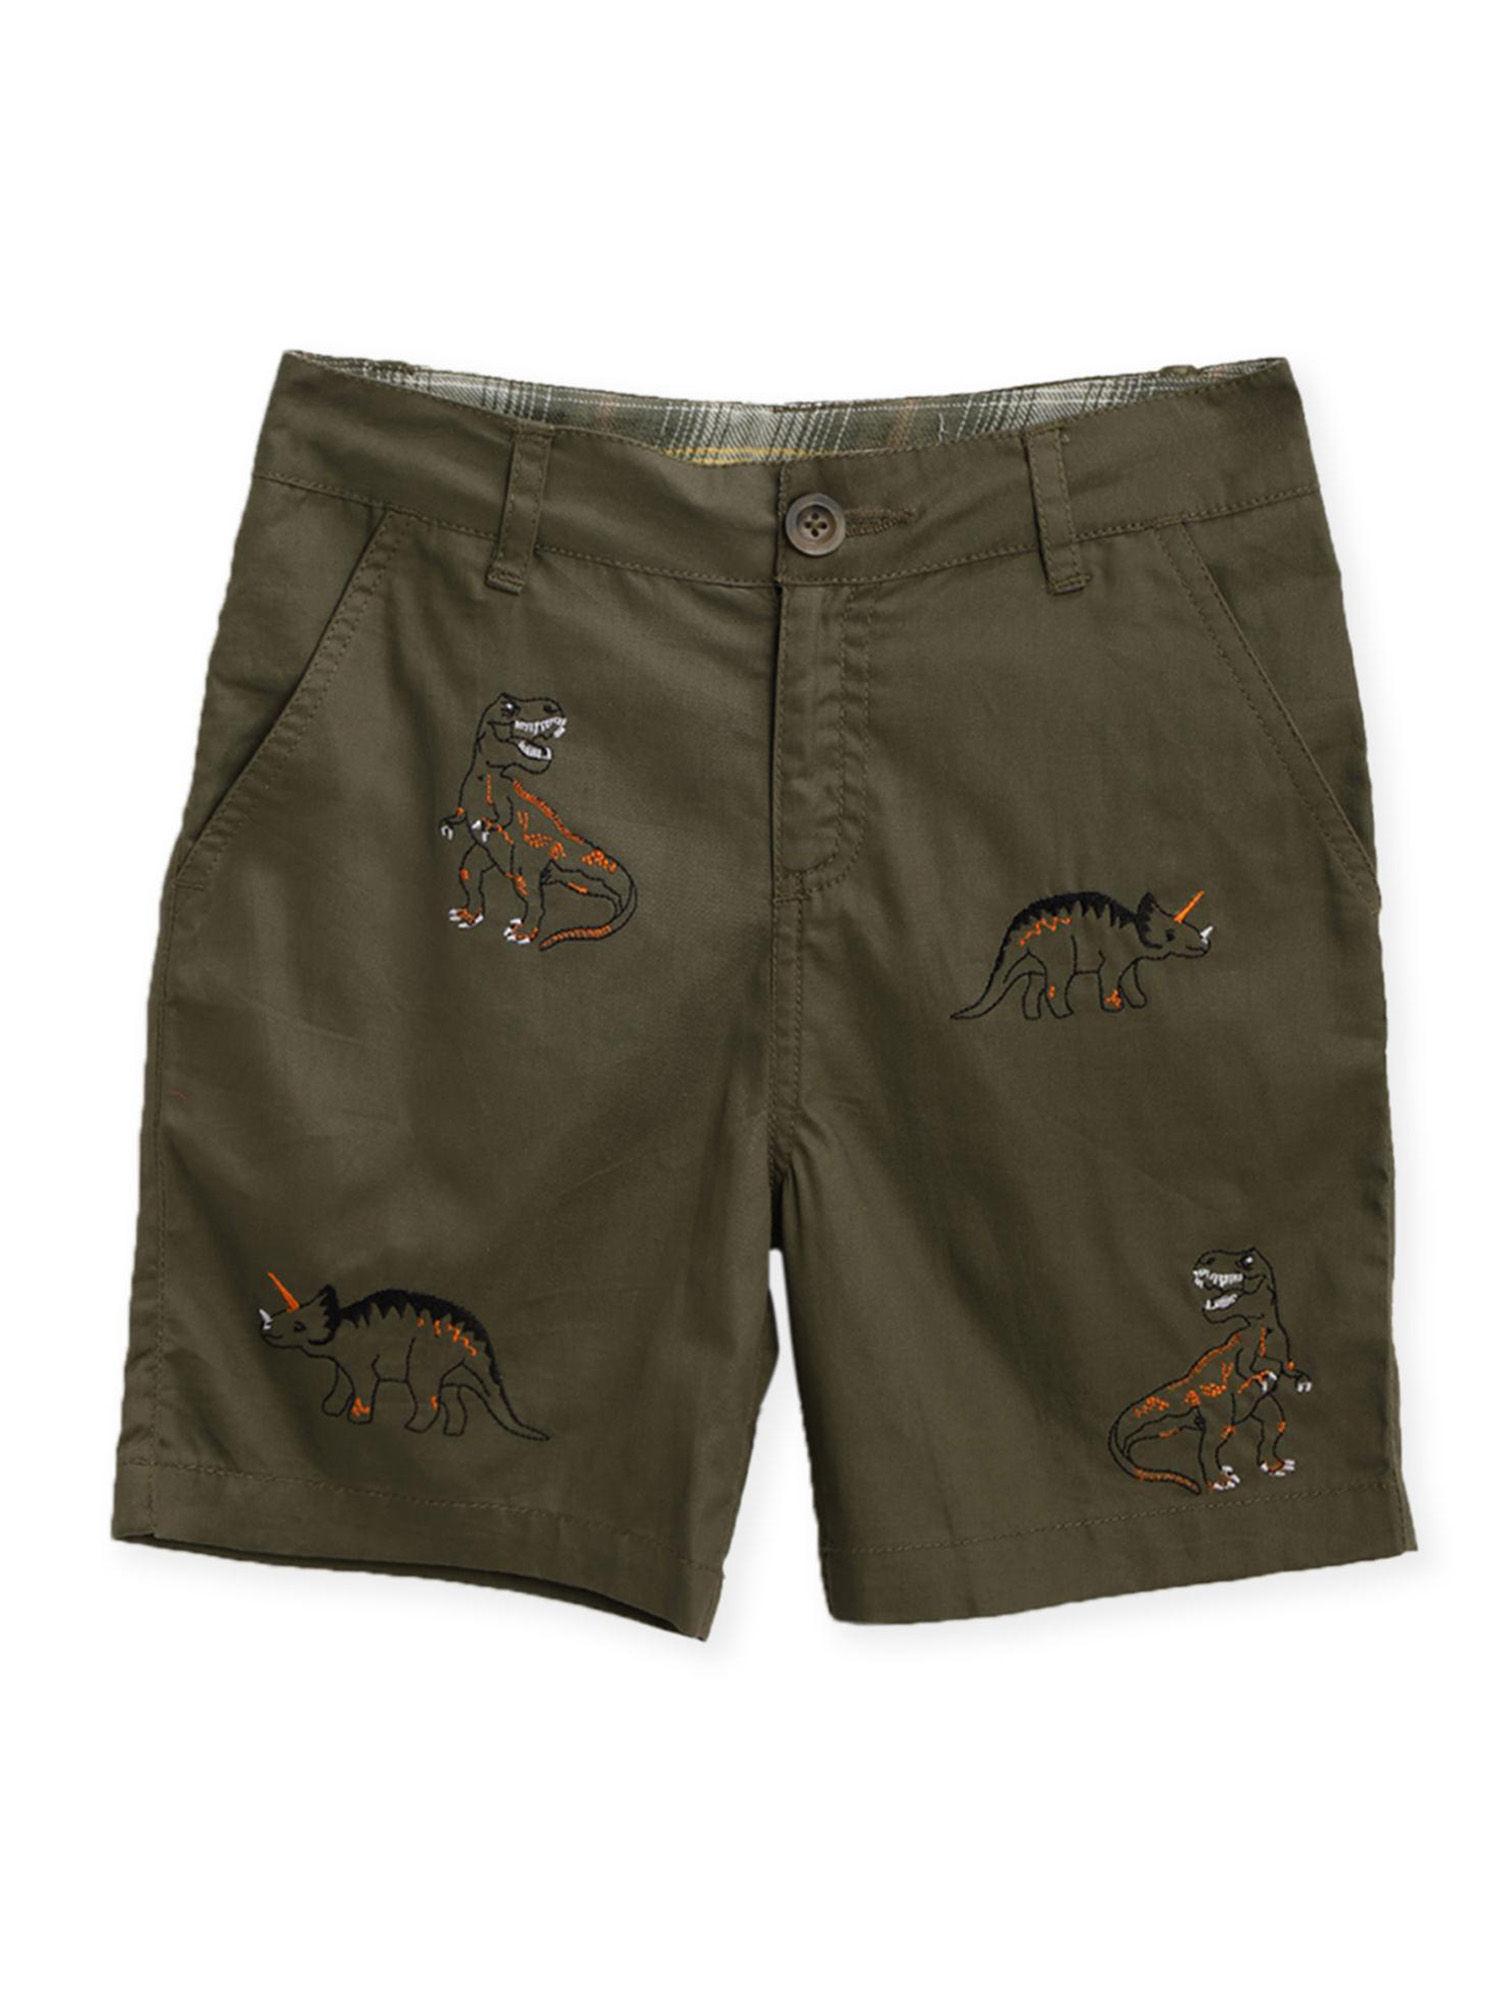 dark brown embroidered t-rex shorts